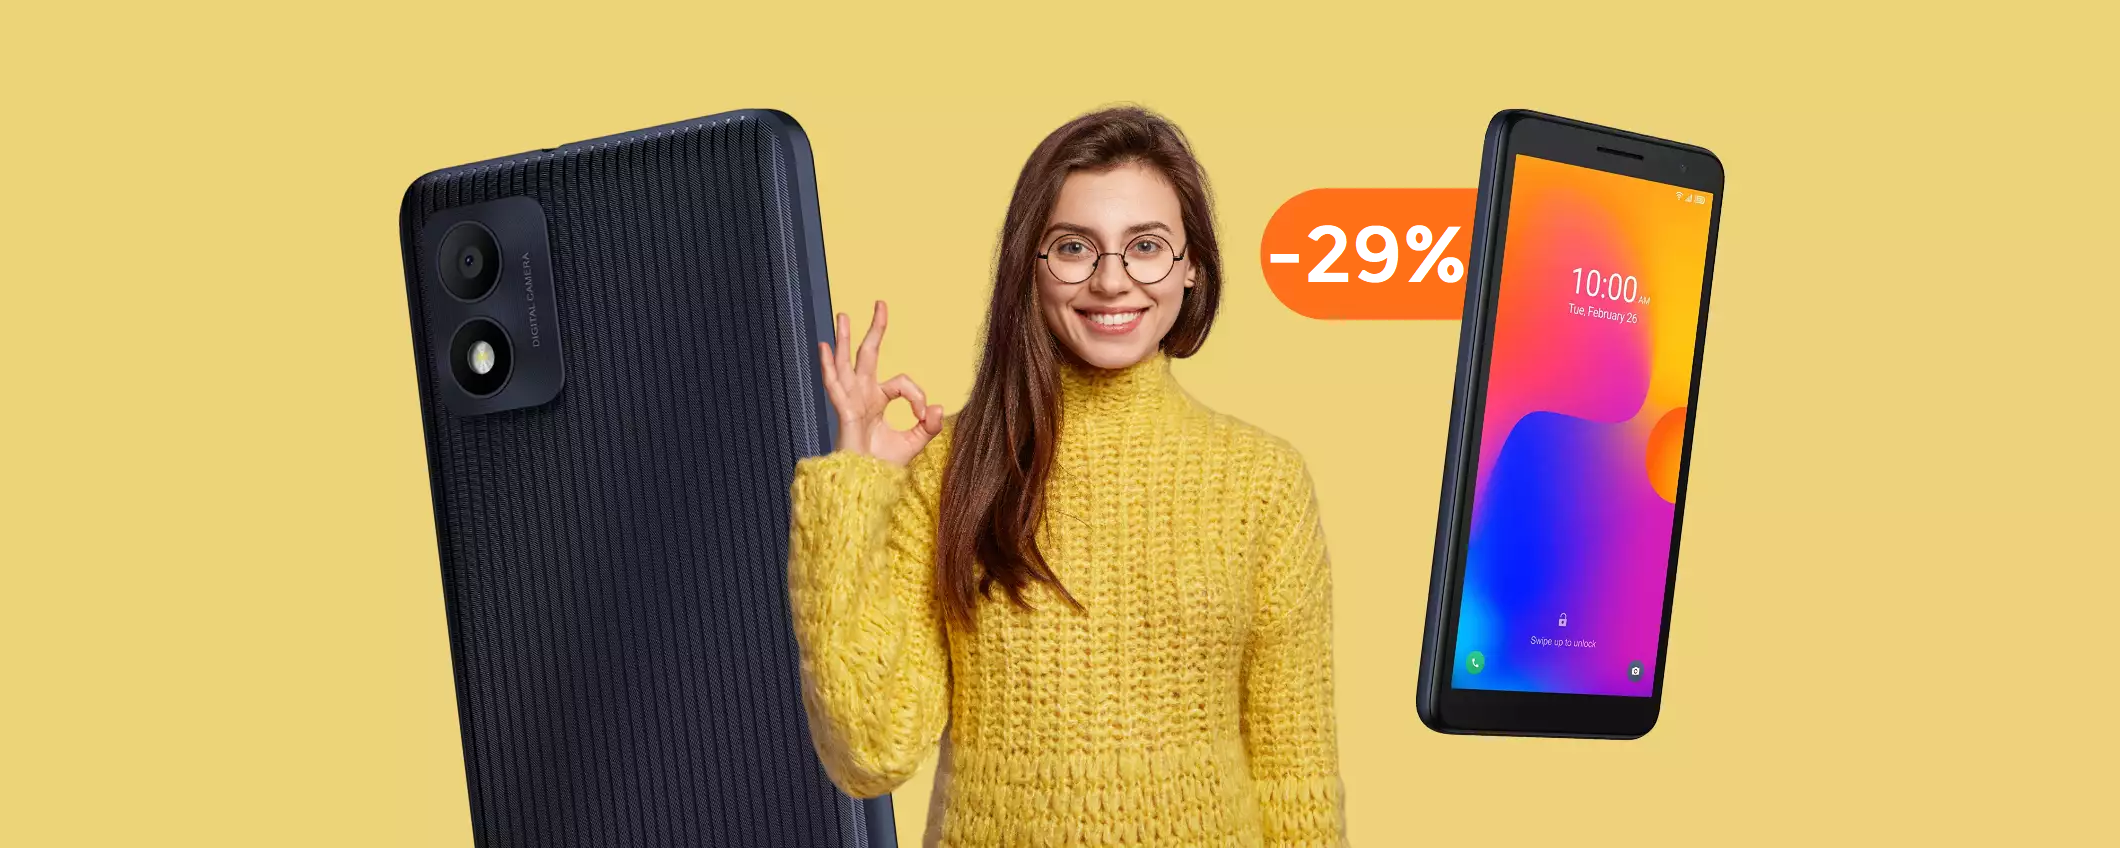 Smartphone Dual Sim a prezzo STRACCIATO su Amazon: tuo con 75€